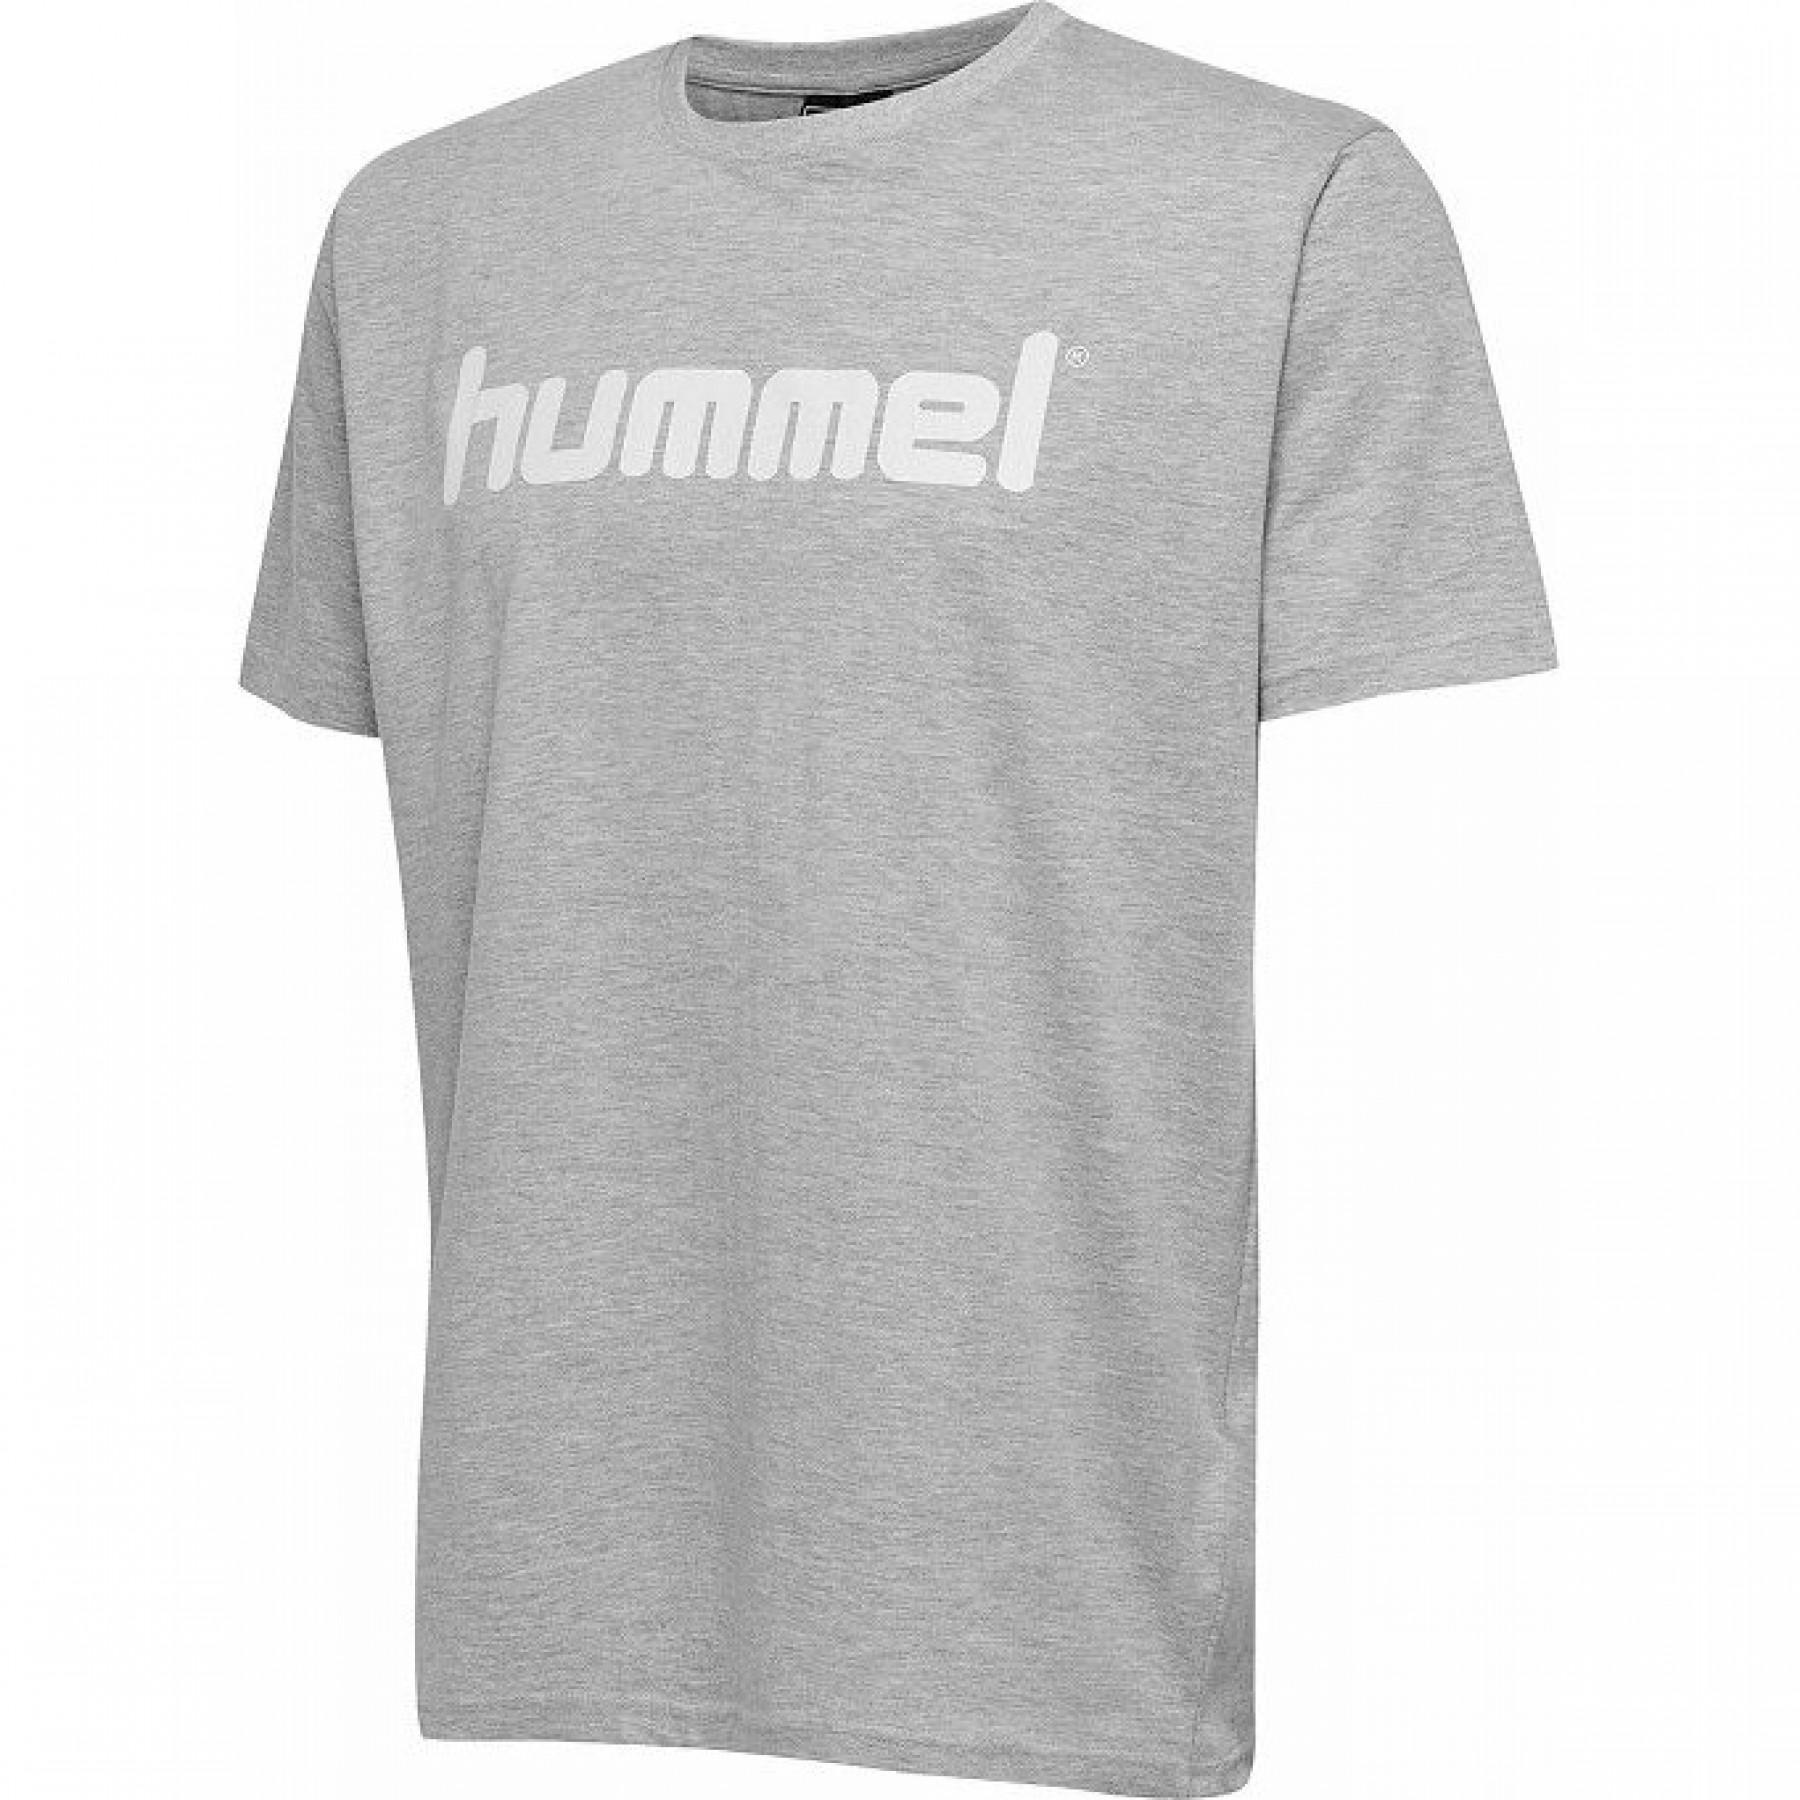 Camiseta niños Hummel hmlgo cotton logo